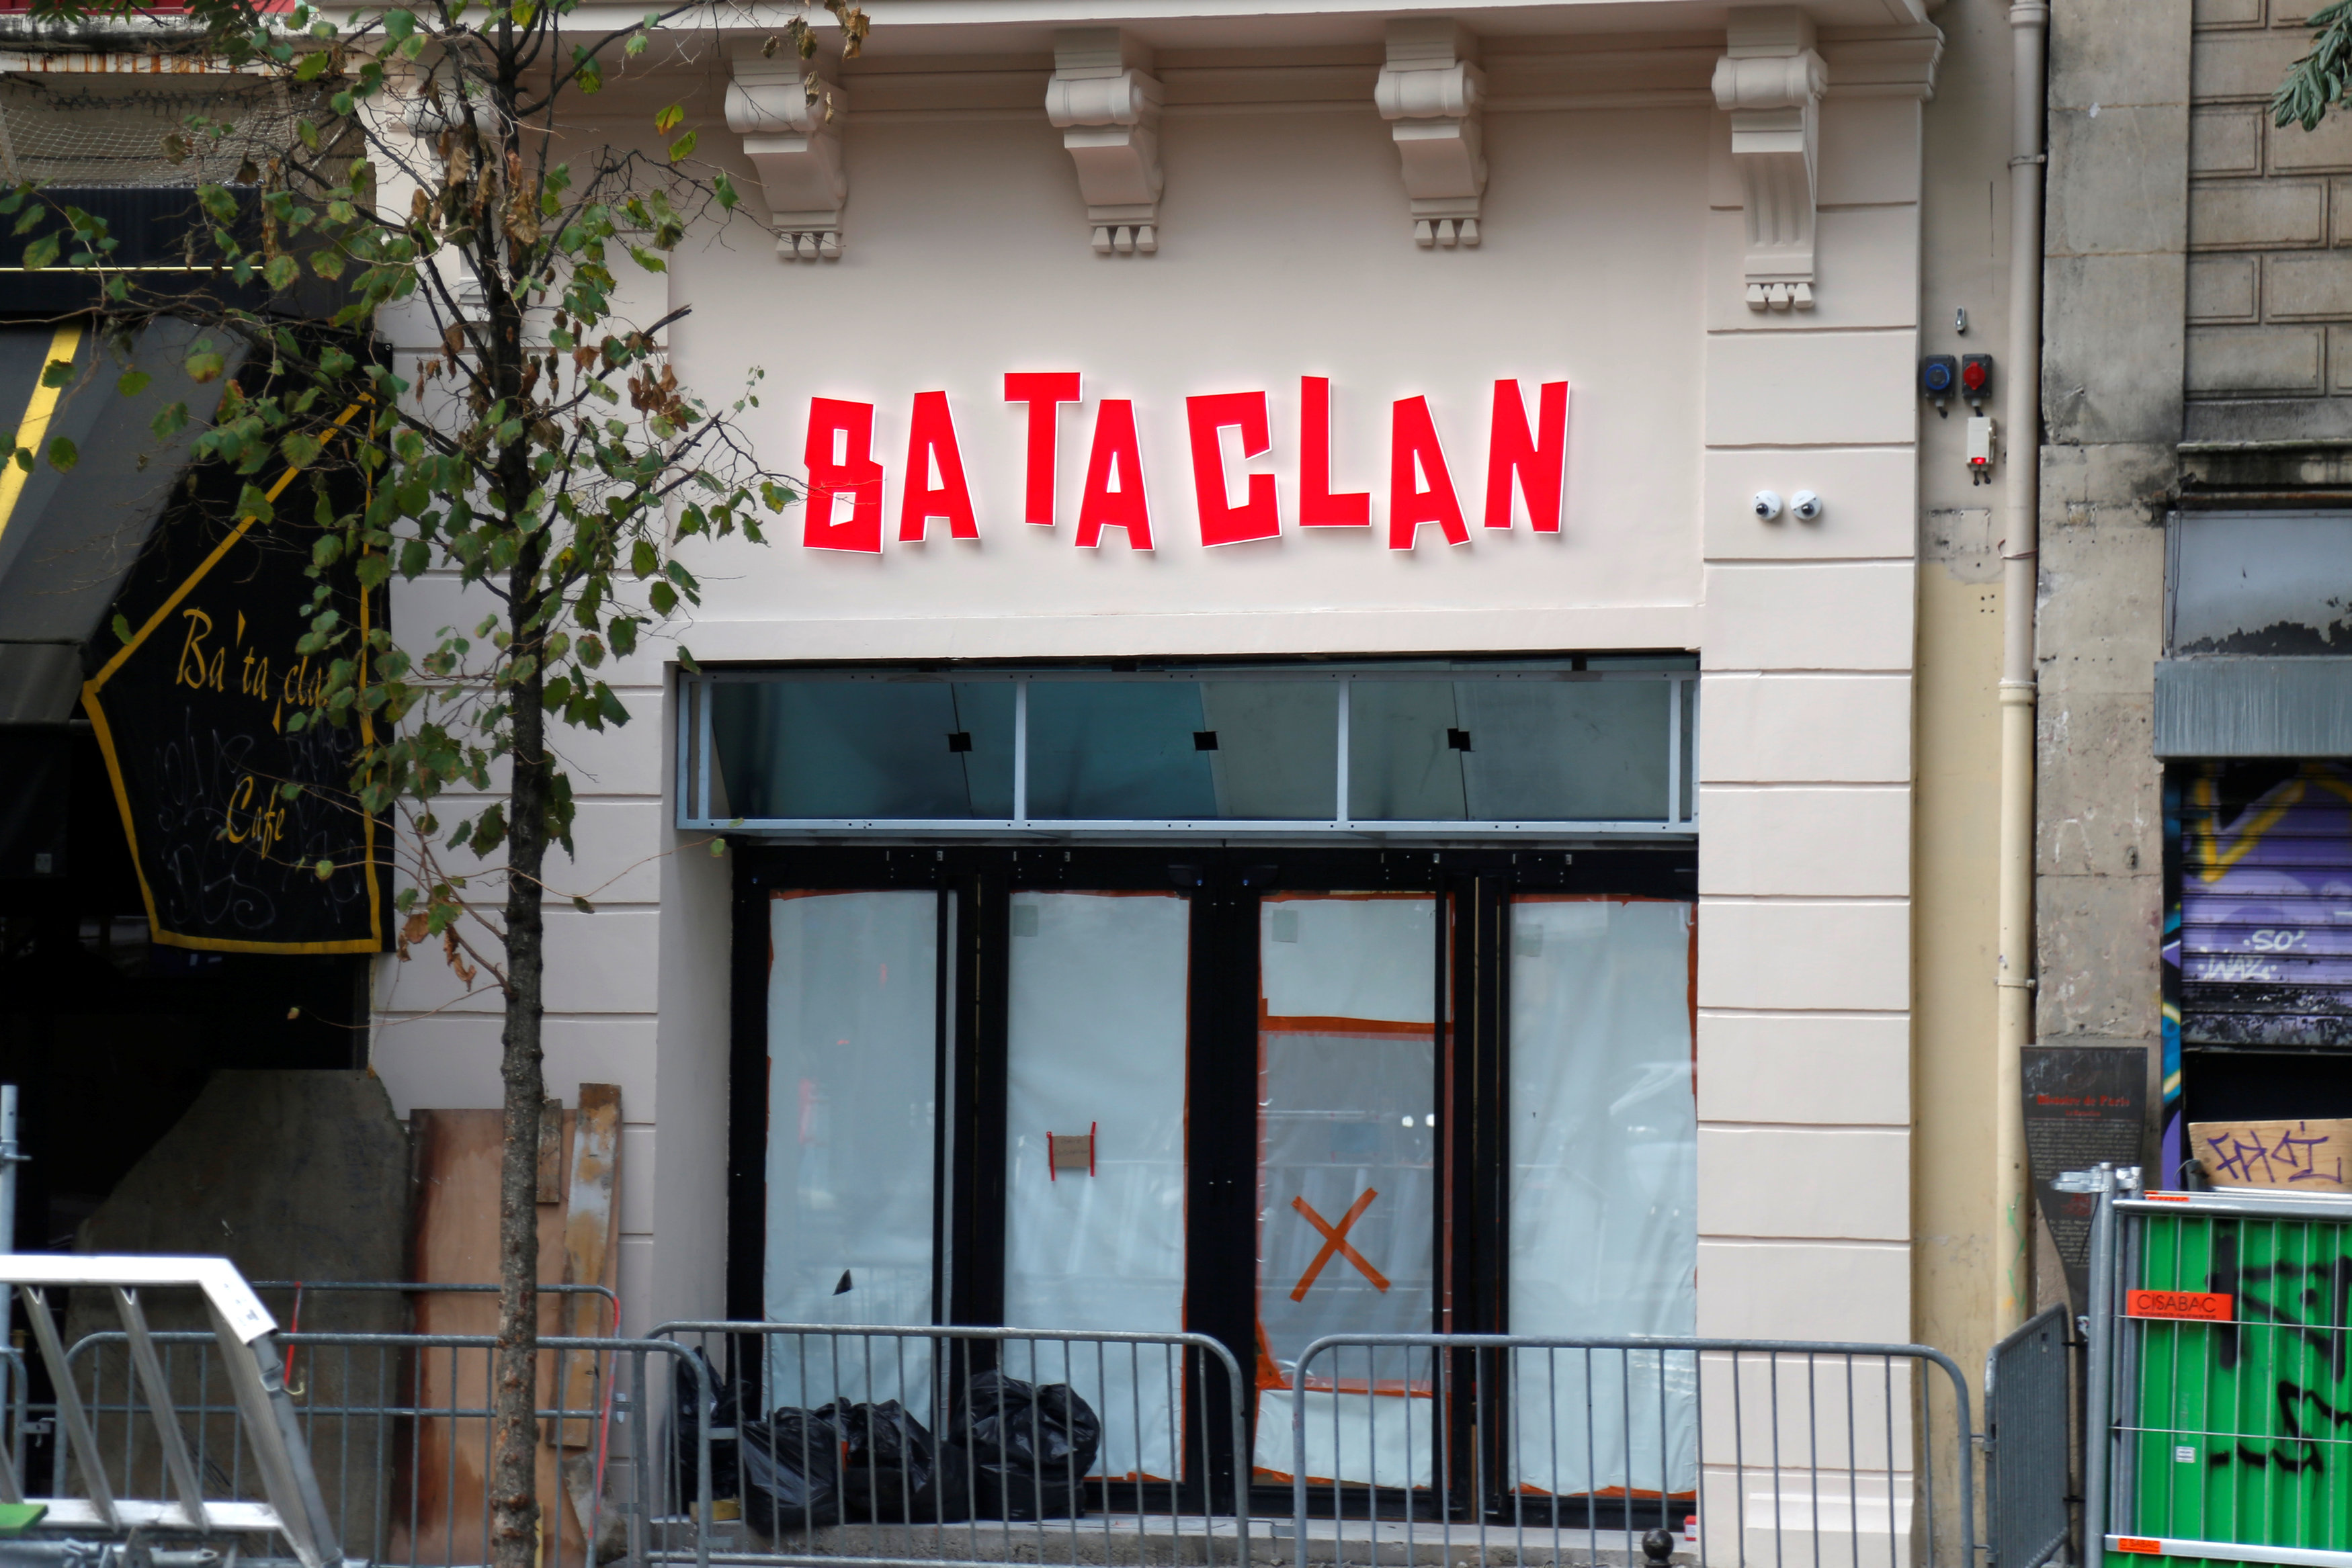 Ο Στινγκ ανοίγει με συναυλία το Bataclan στην επέτειο των επιθέσεων